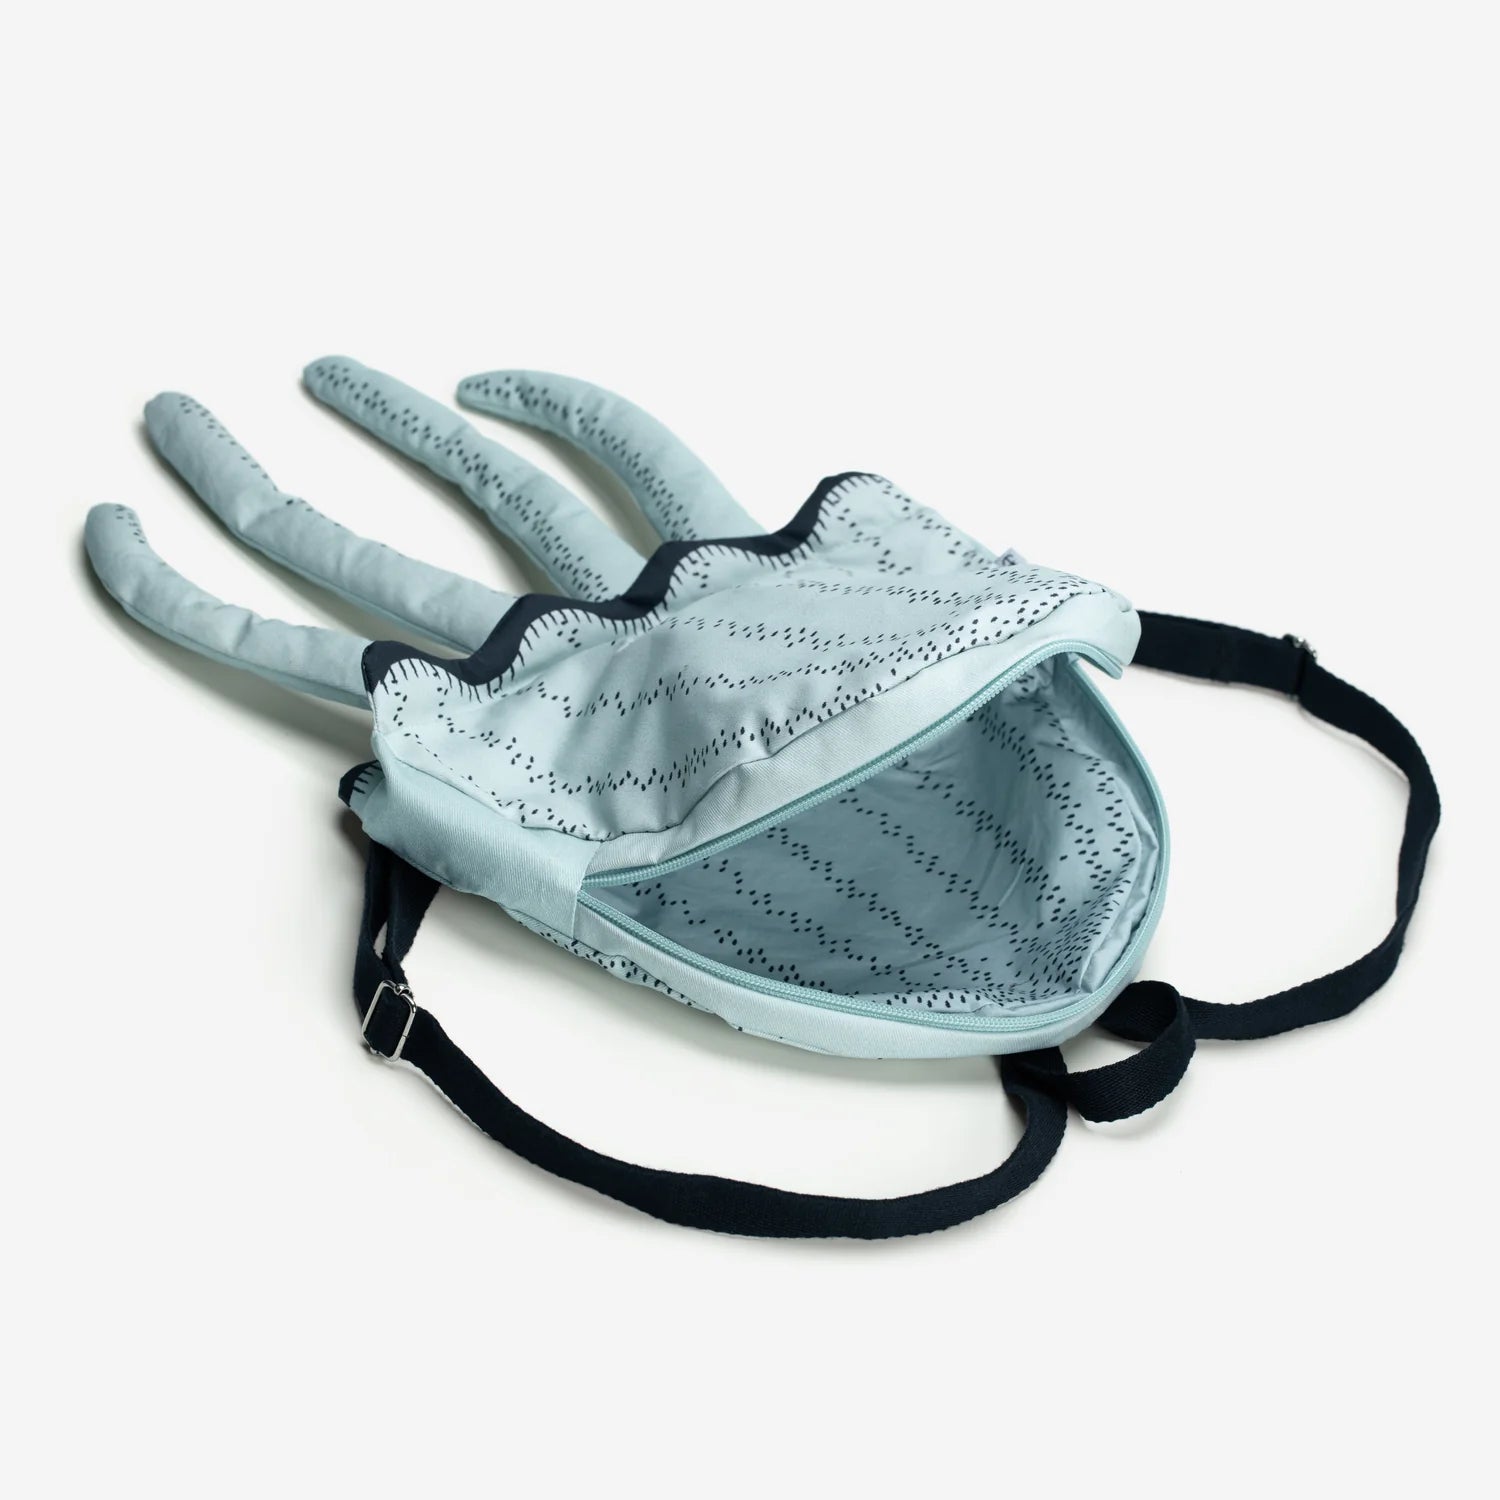 Jellyfish Backpack - Waterproof